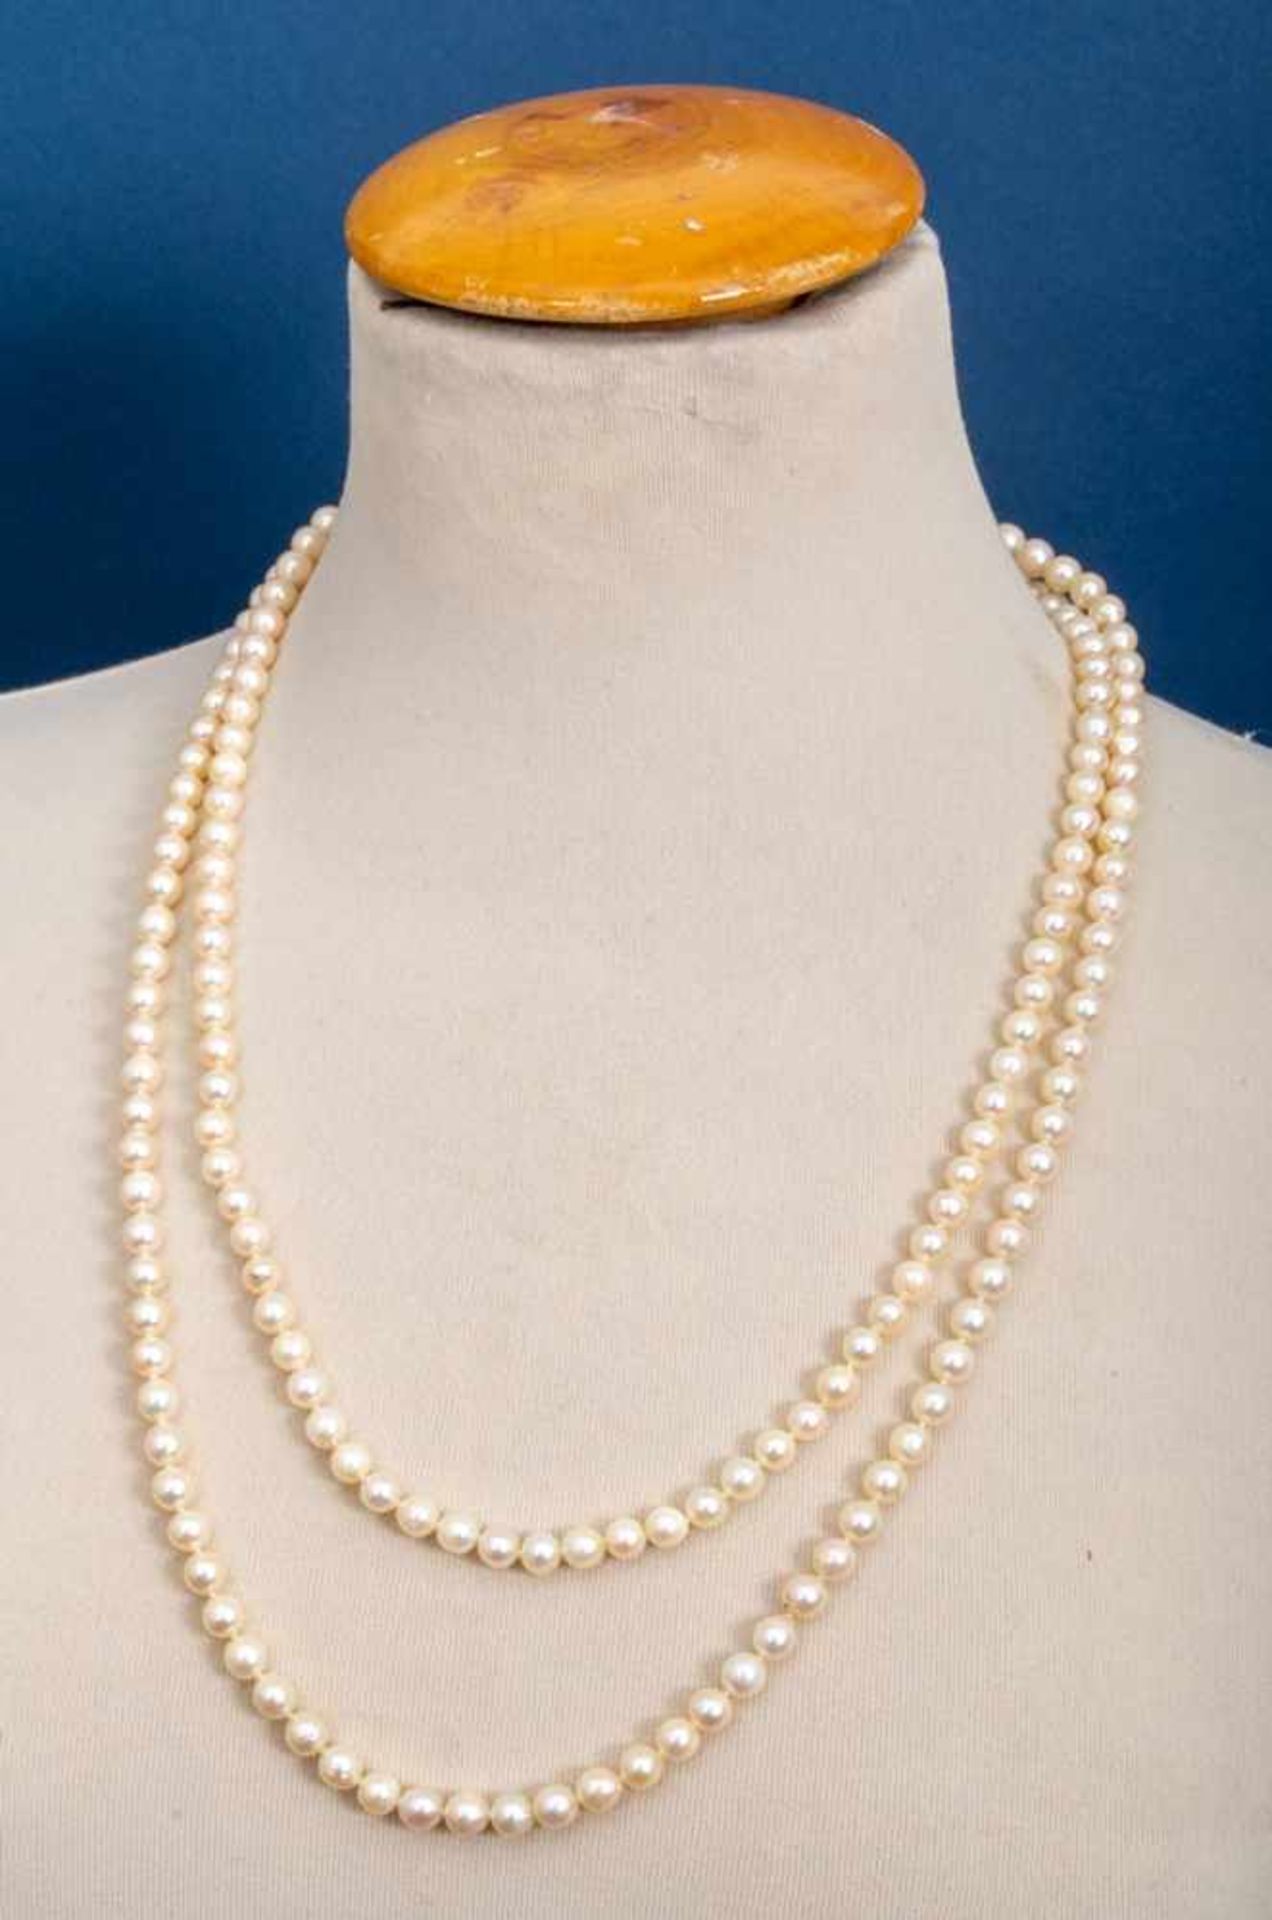 Lange Perlenkette, ca. 125 cm, Durchmesser der einzeln geknoteten Perlen ca. 6 mm.- - -20.00 % - Image 5 of 7